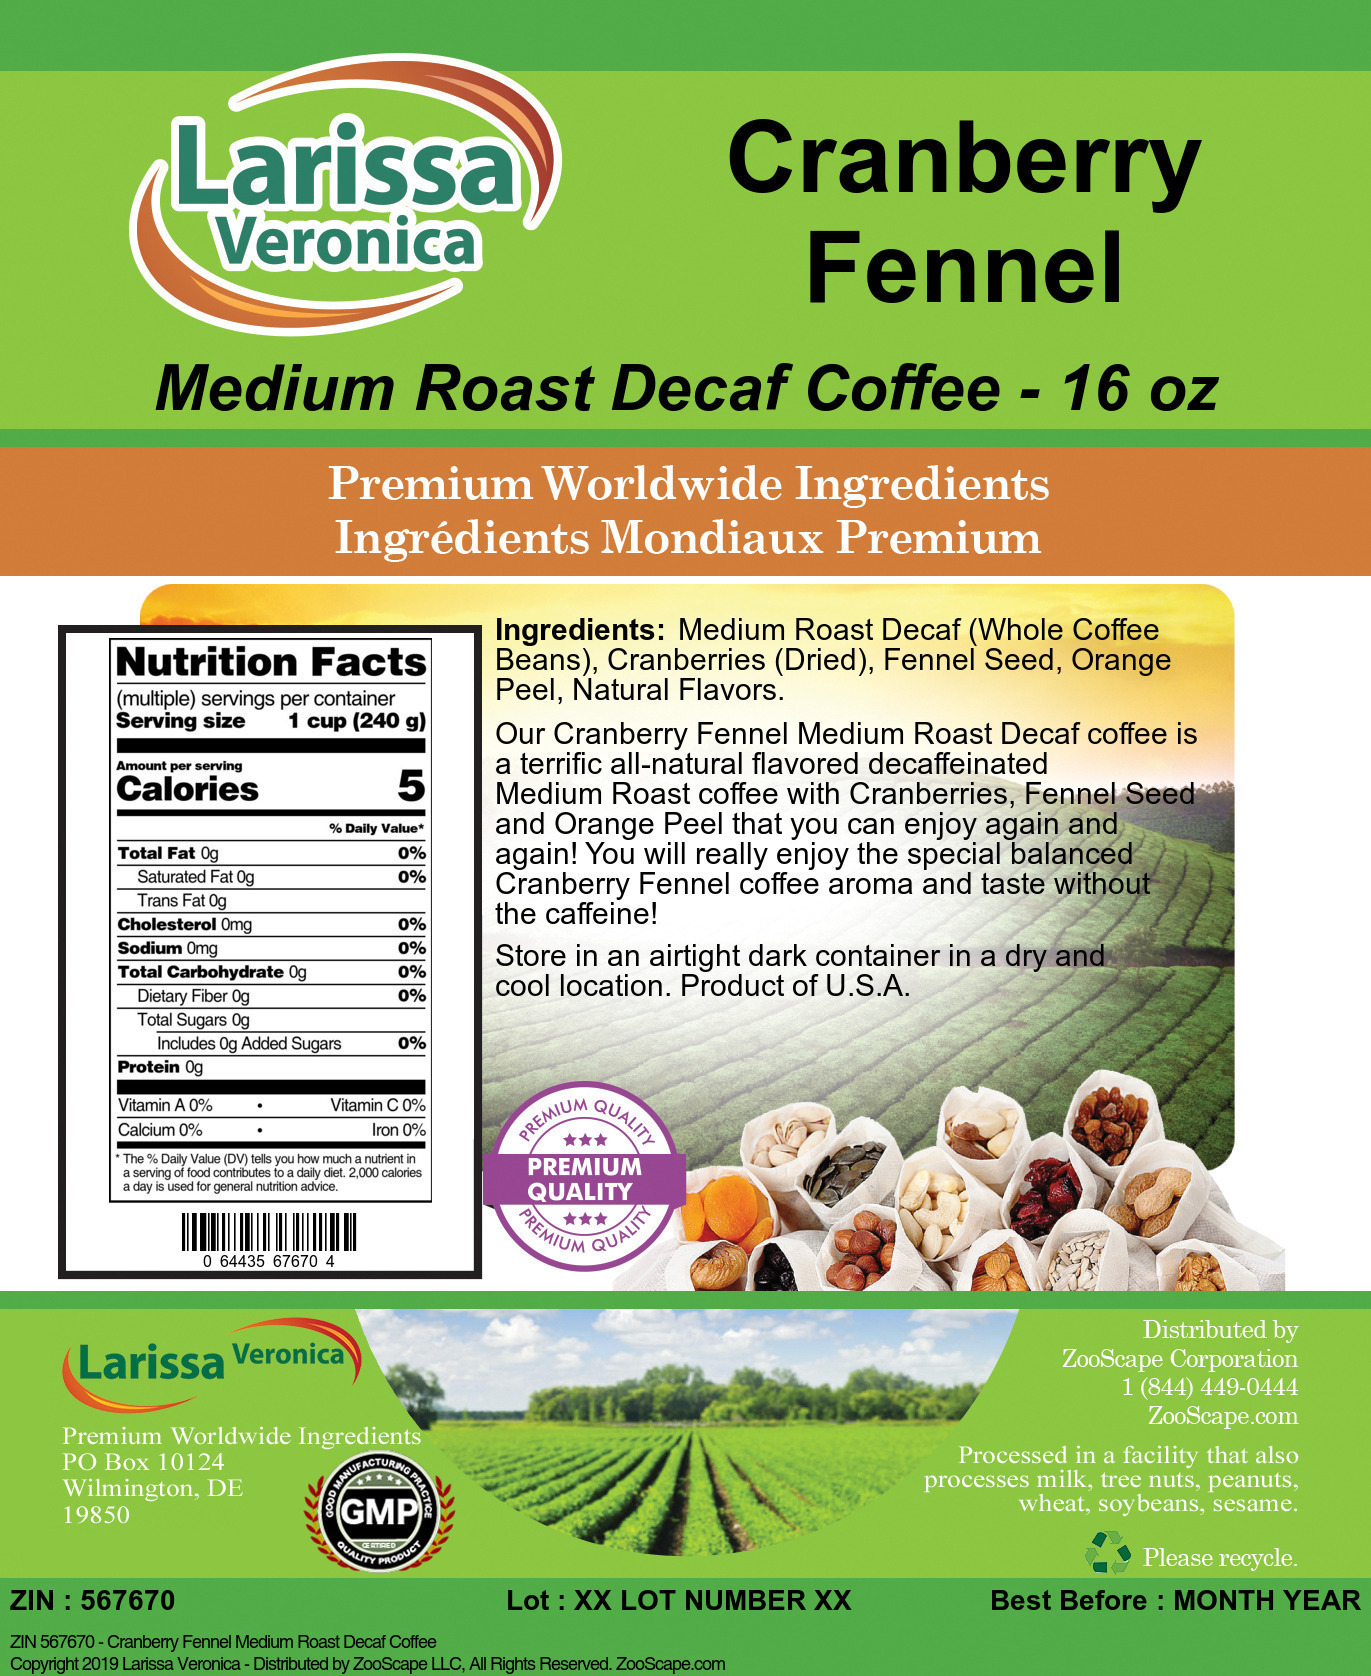 Cranberry Fennel Medium Roast Decaf Coffee - Label